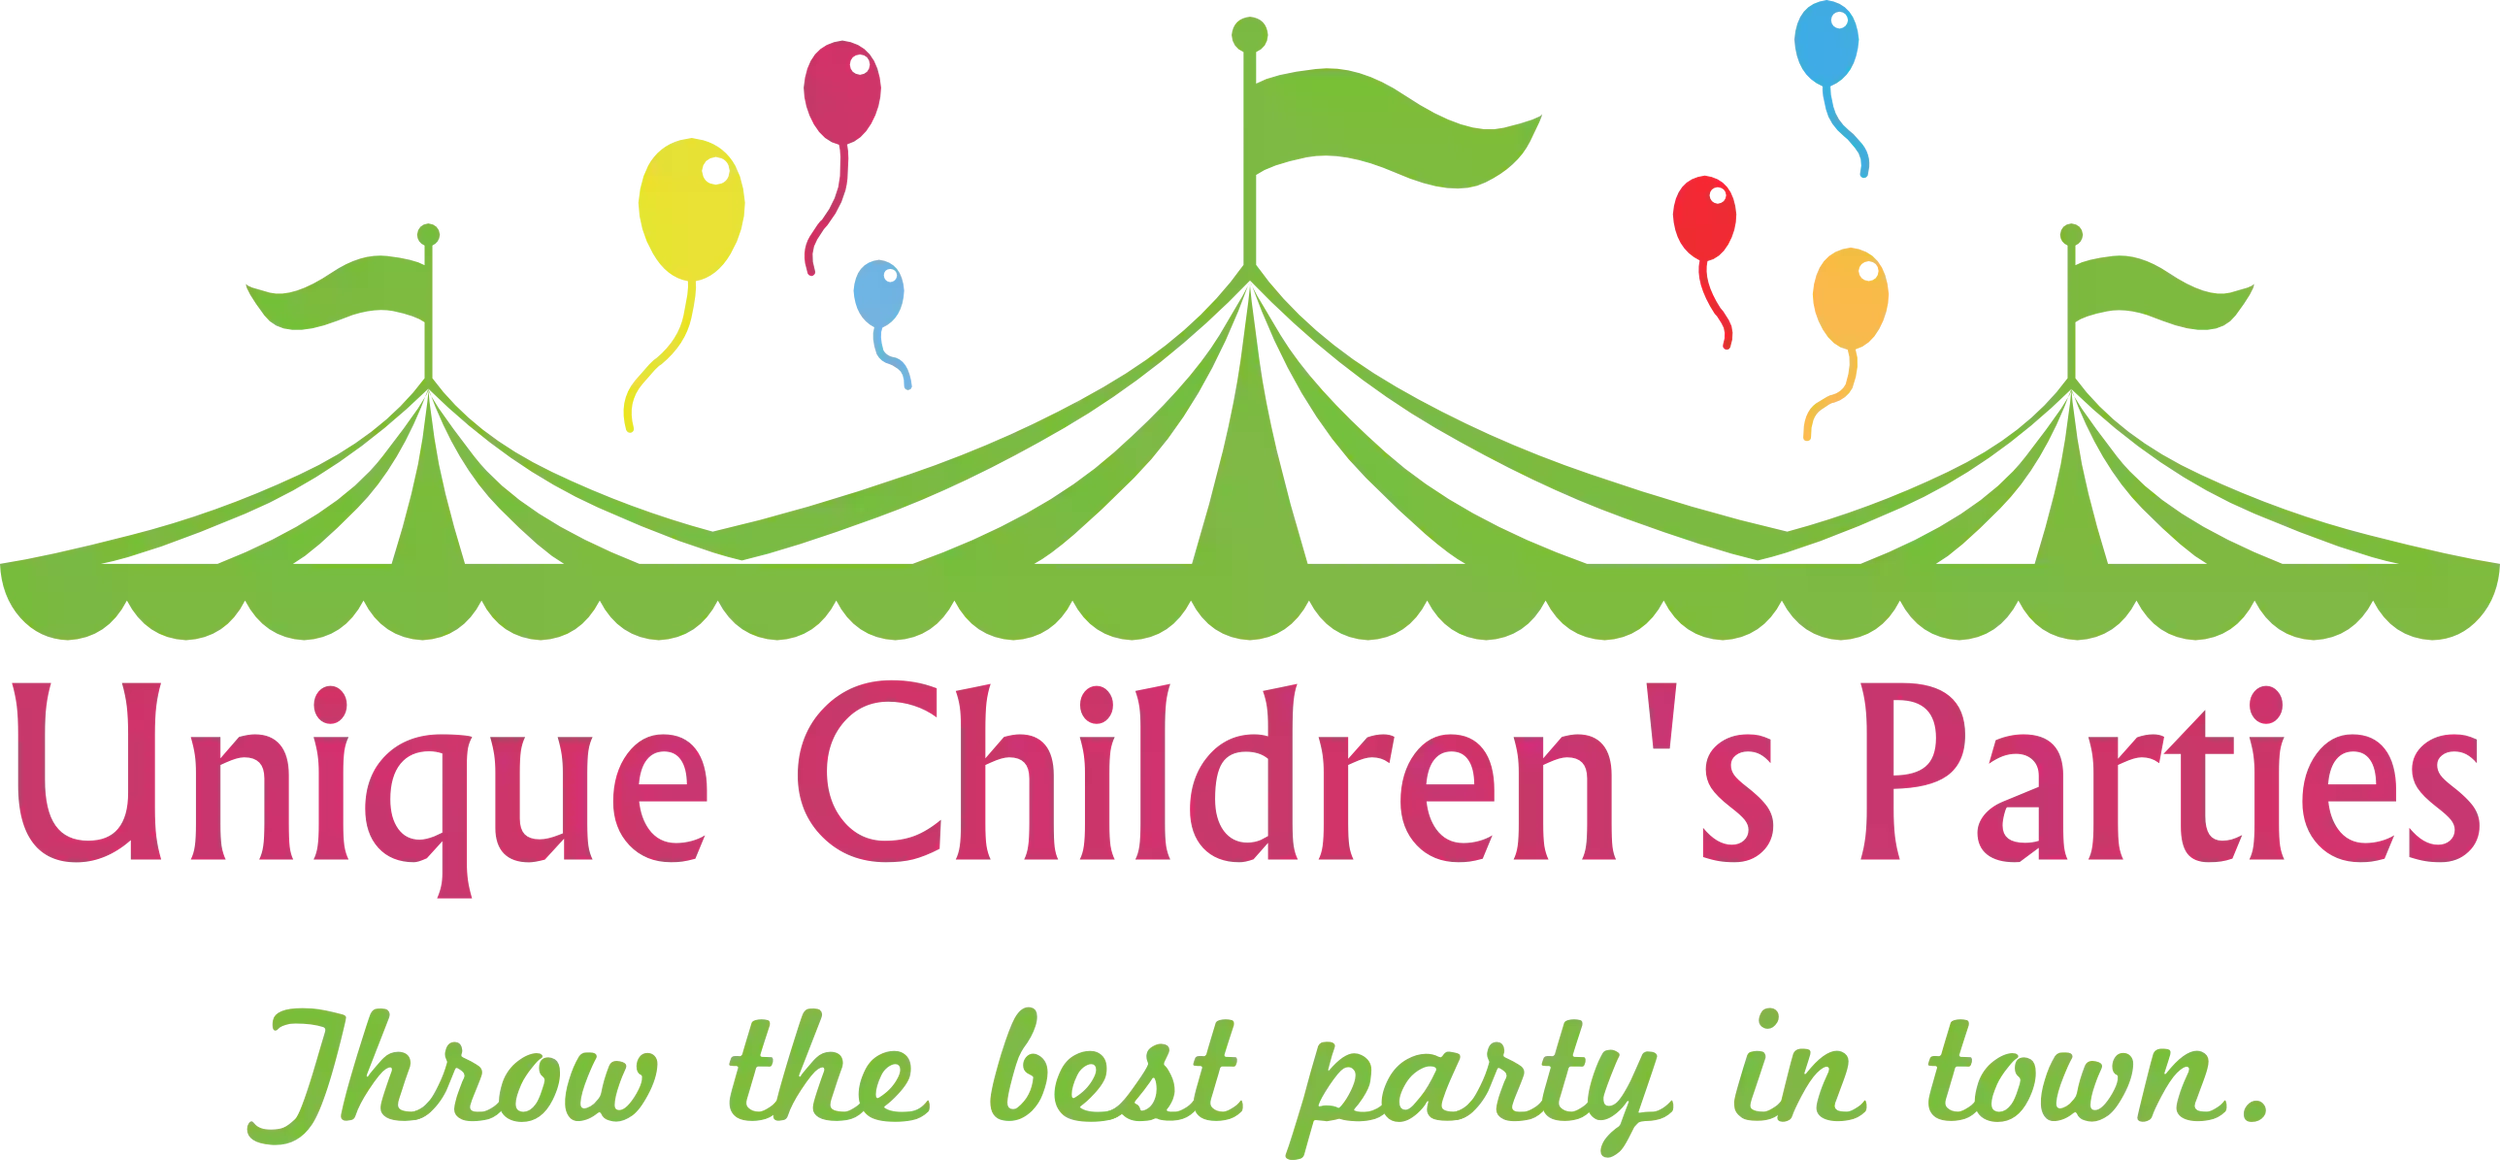 Unique Children's Parties